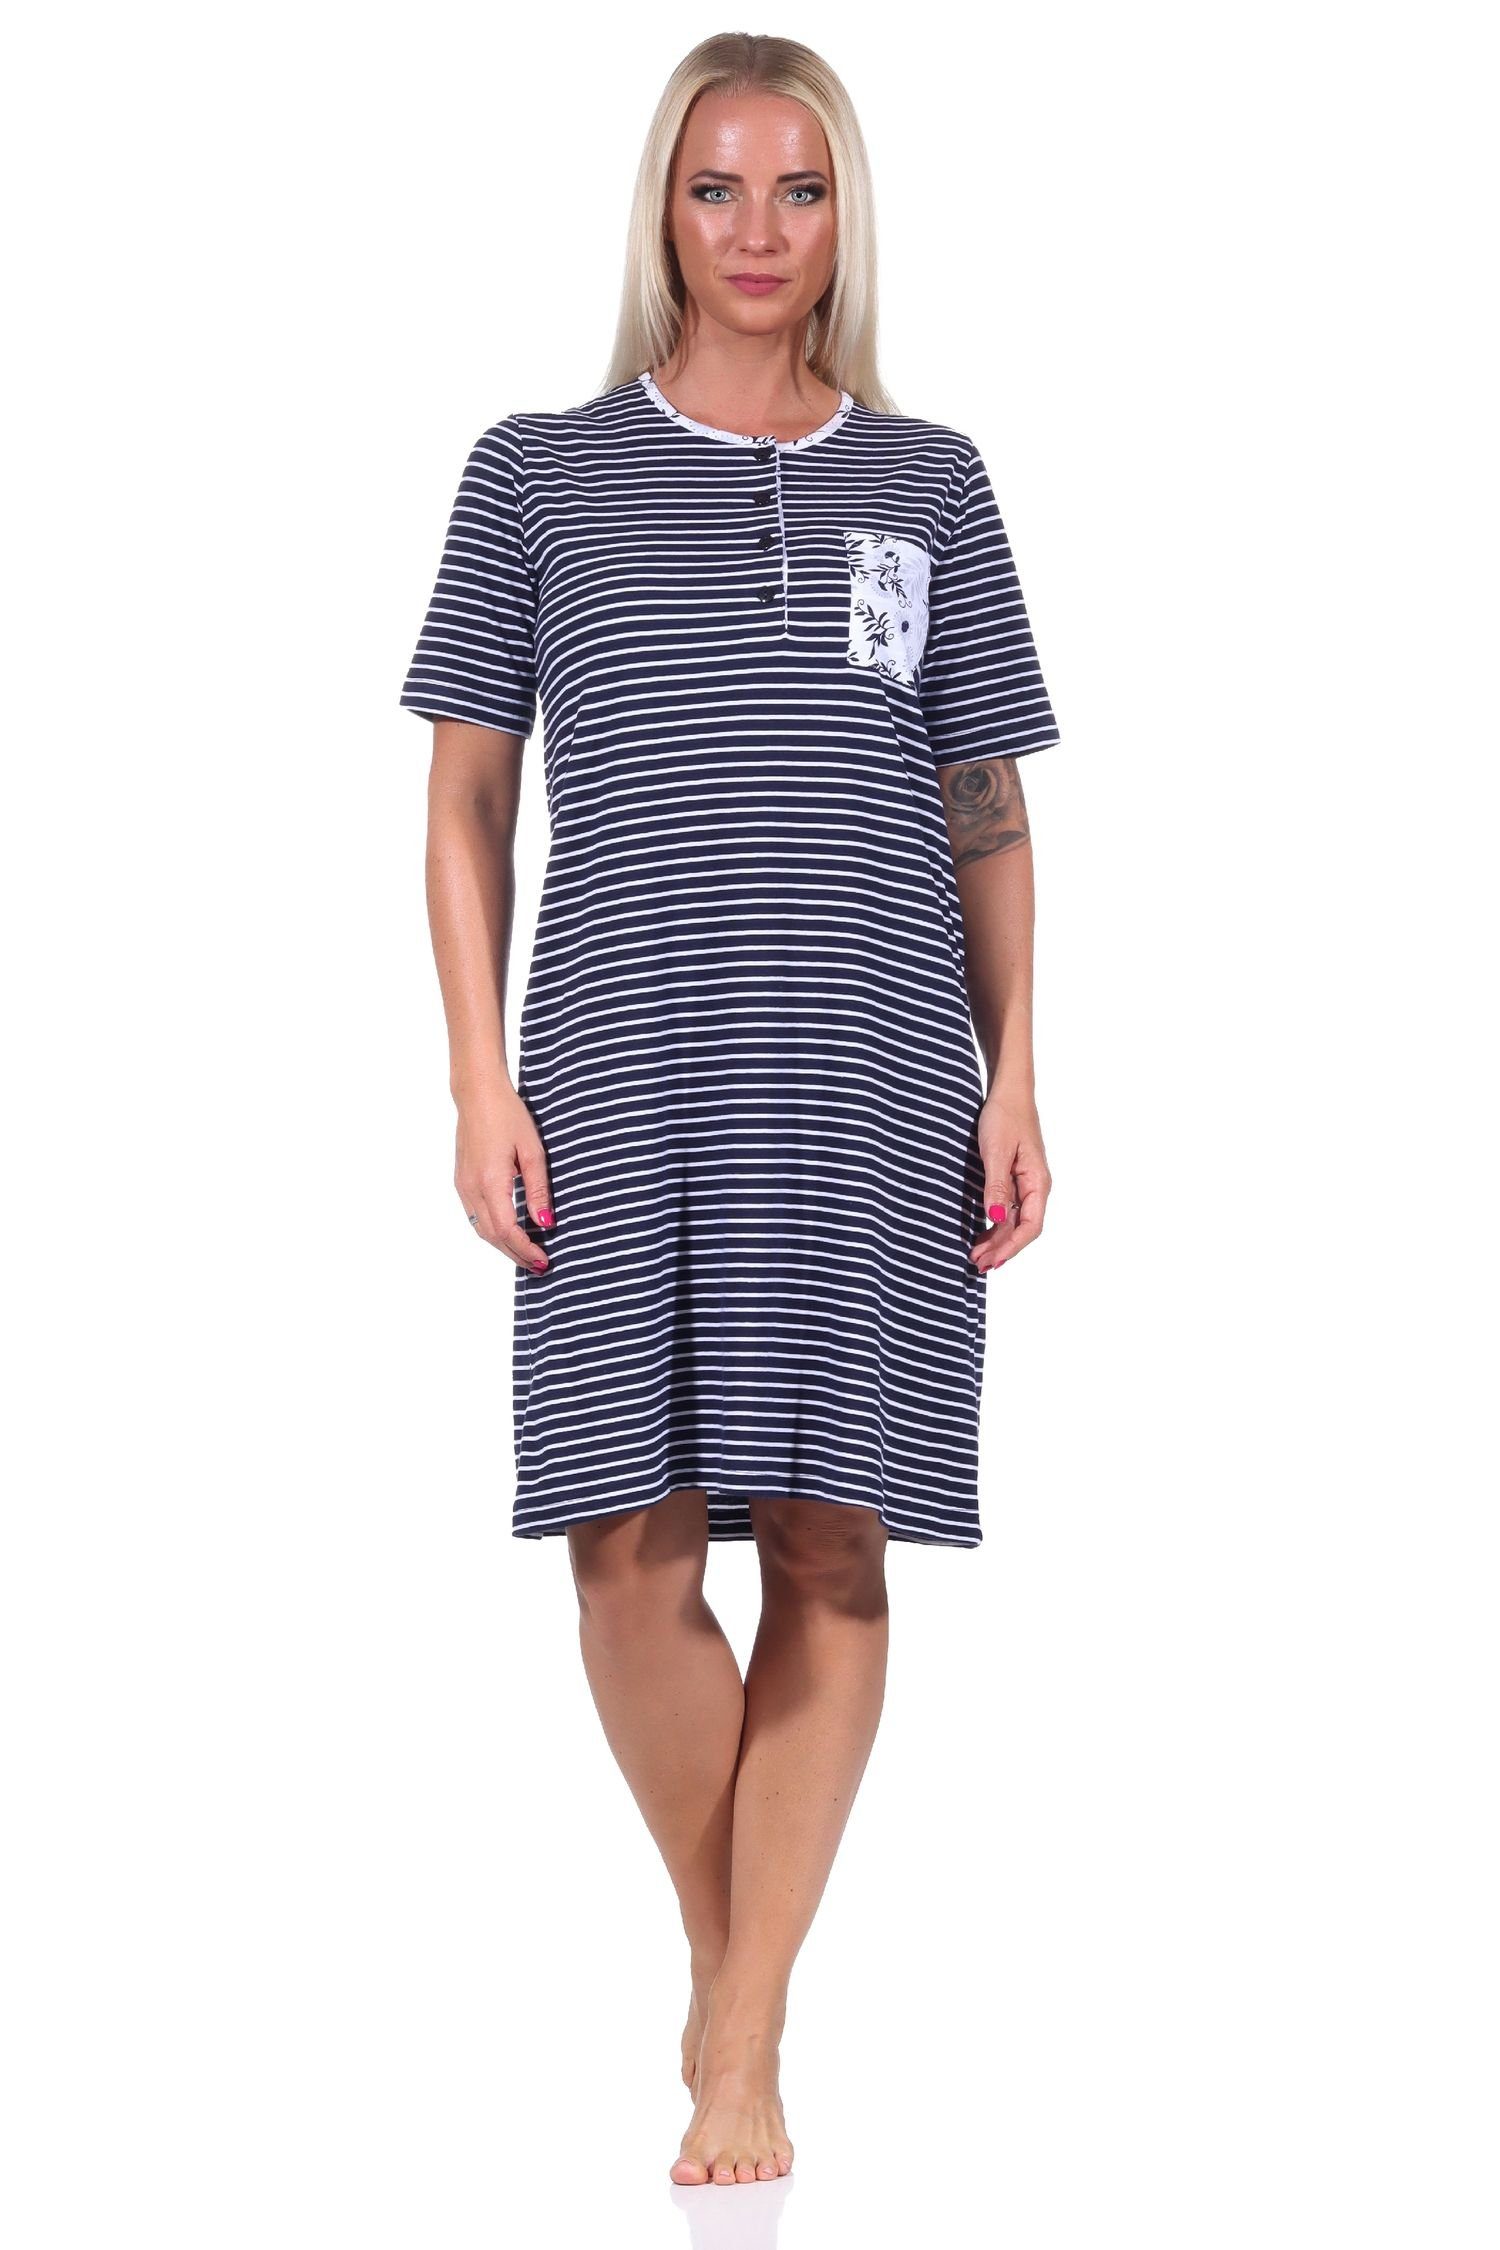 Normann Nachthemd Damen kurzarm Nachthemd mit Knopfleiste am Hals in Streifenoptik marine